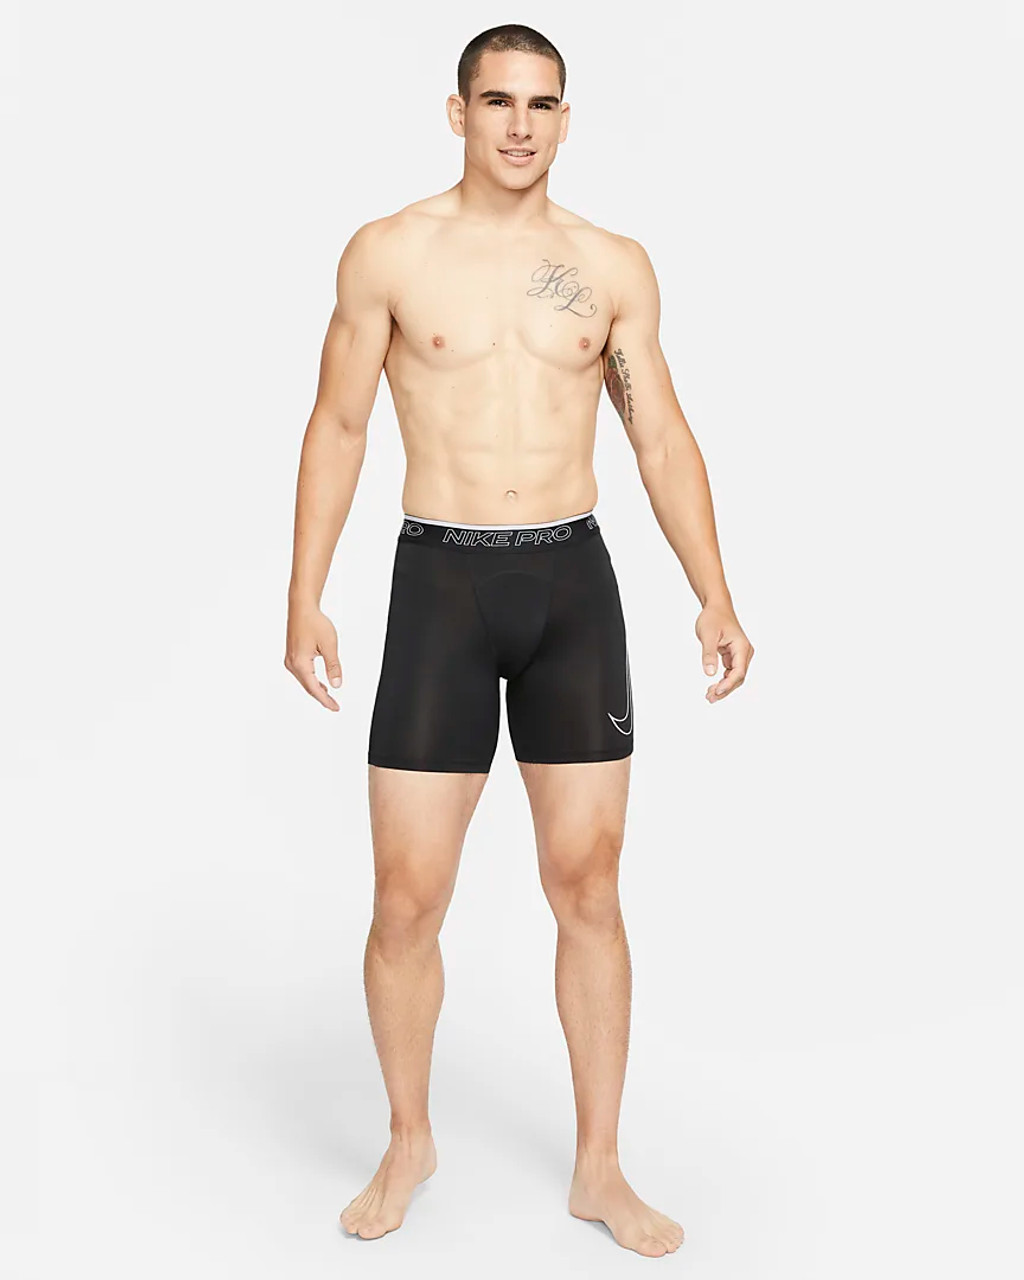 Men's Nike Pro Dri-Fit Shorts